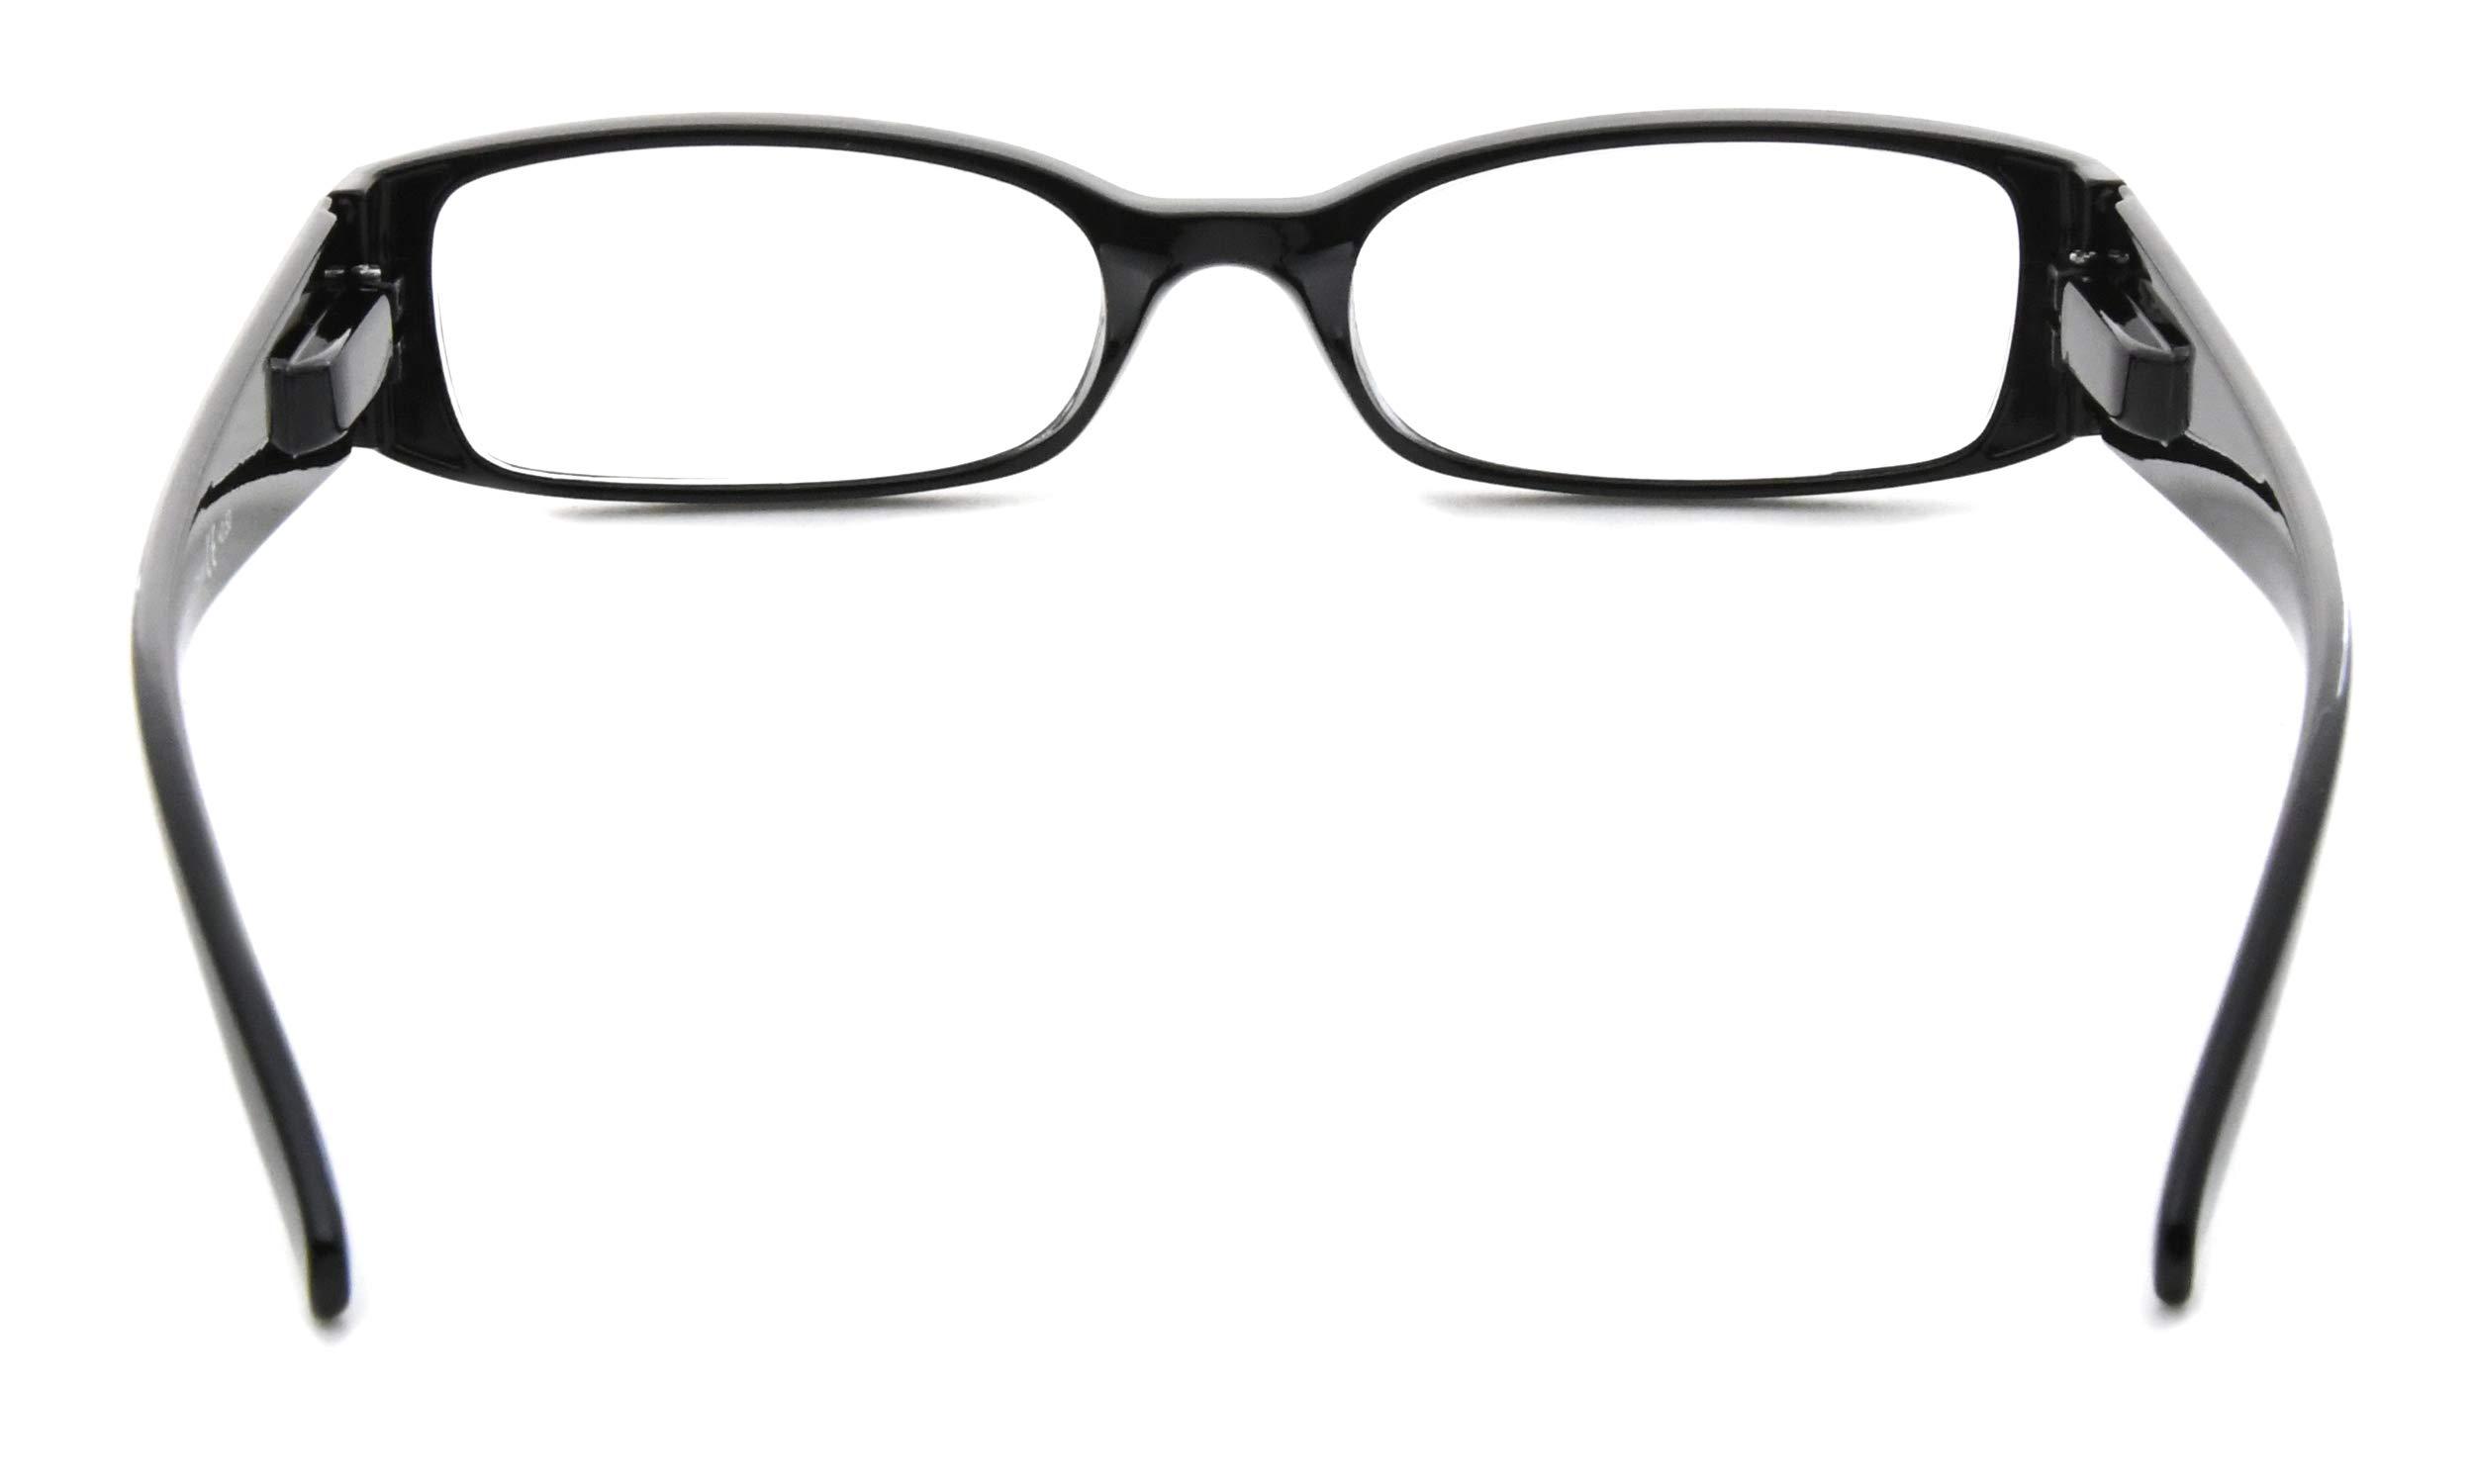 Eyekepper 5 Pairs Reading Glasses for Women Reading +3.00 Black Frame Reading Eyeglasses 9